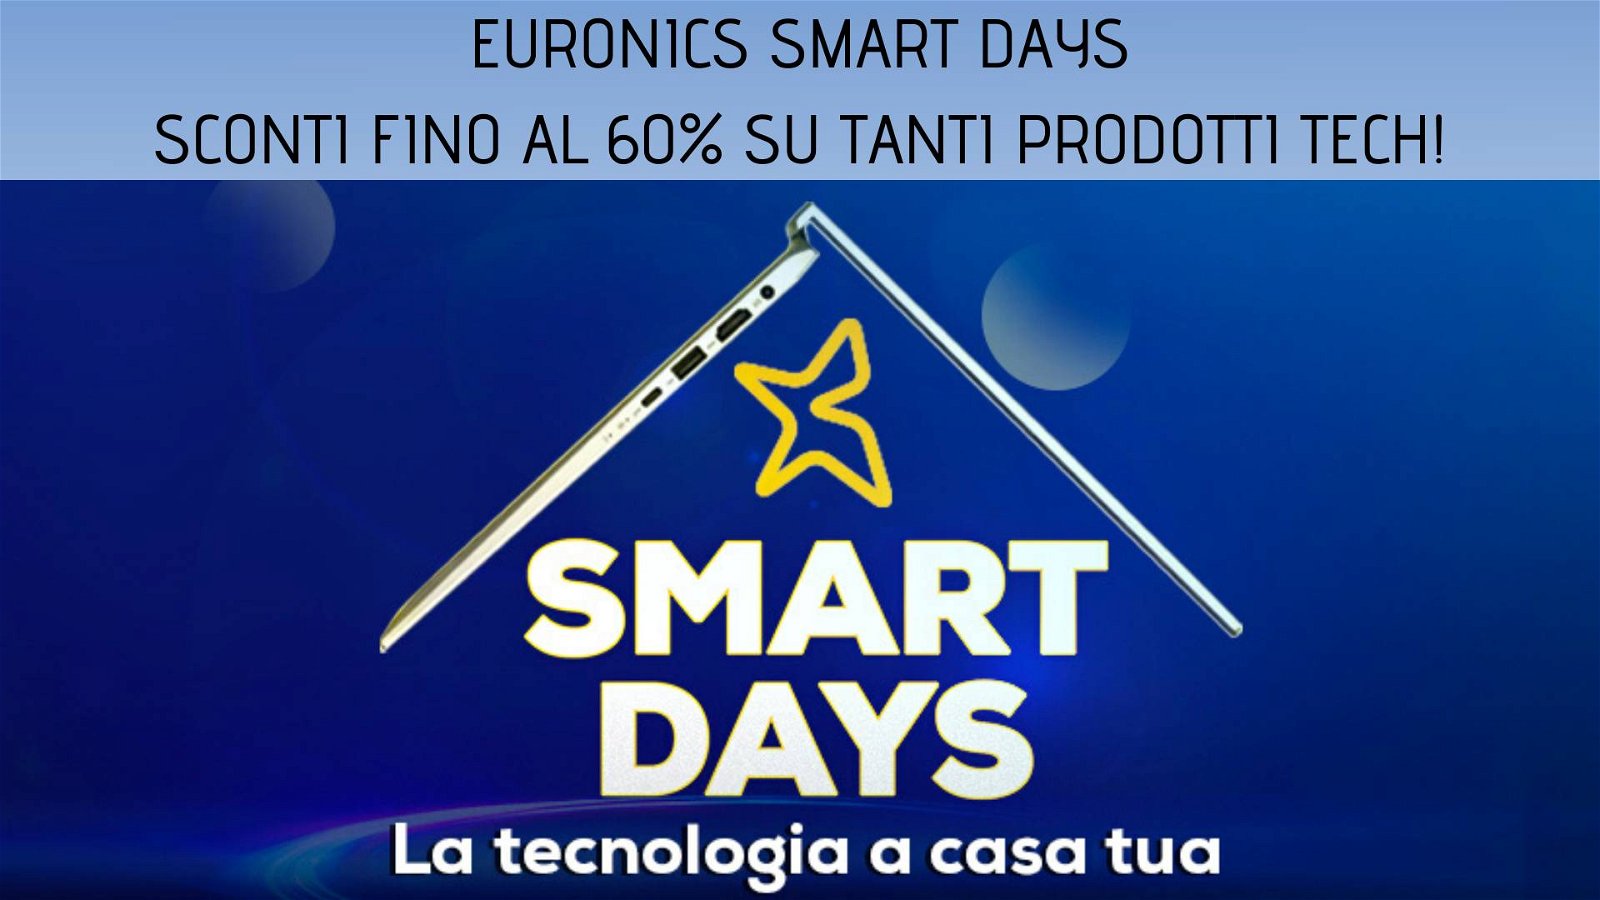 Immagine di Sconti fino al 60% negli Smart Days di Euronics